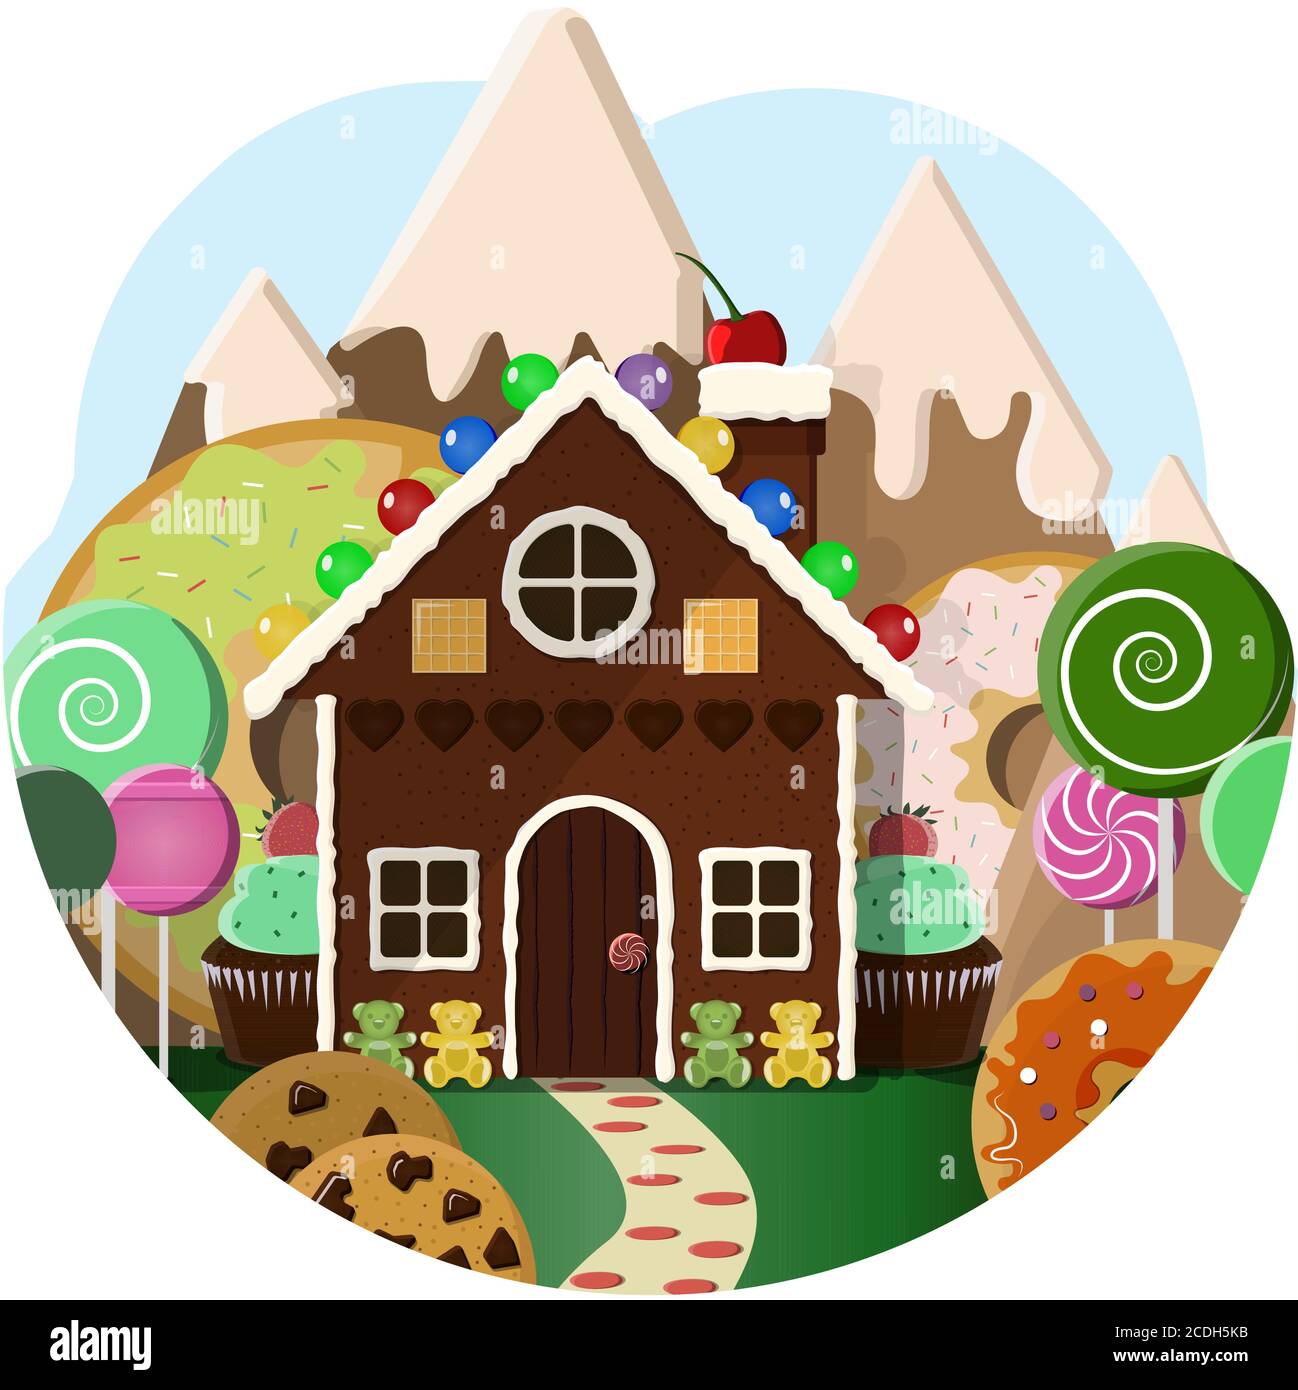 Casa di pan di zenzero con alberi di caramelle e dolci montagne sullo sfondo. Illustrazione di una pasticceria con un paesaggio di leccornie, cupcake, biscotti, ciambelle e frutta. Cartoon Bright vettore per bambini, per il giorno dei bambini o saluti. Illustrazione Vettoriale